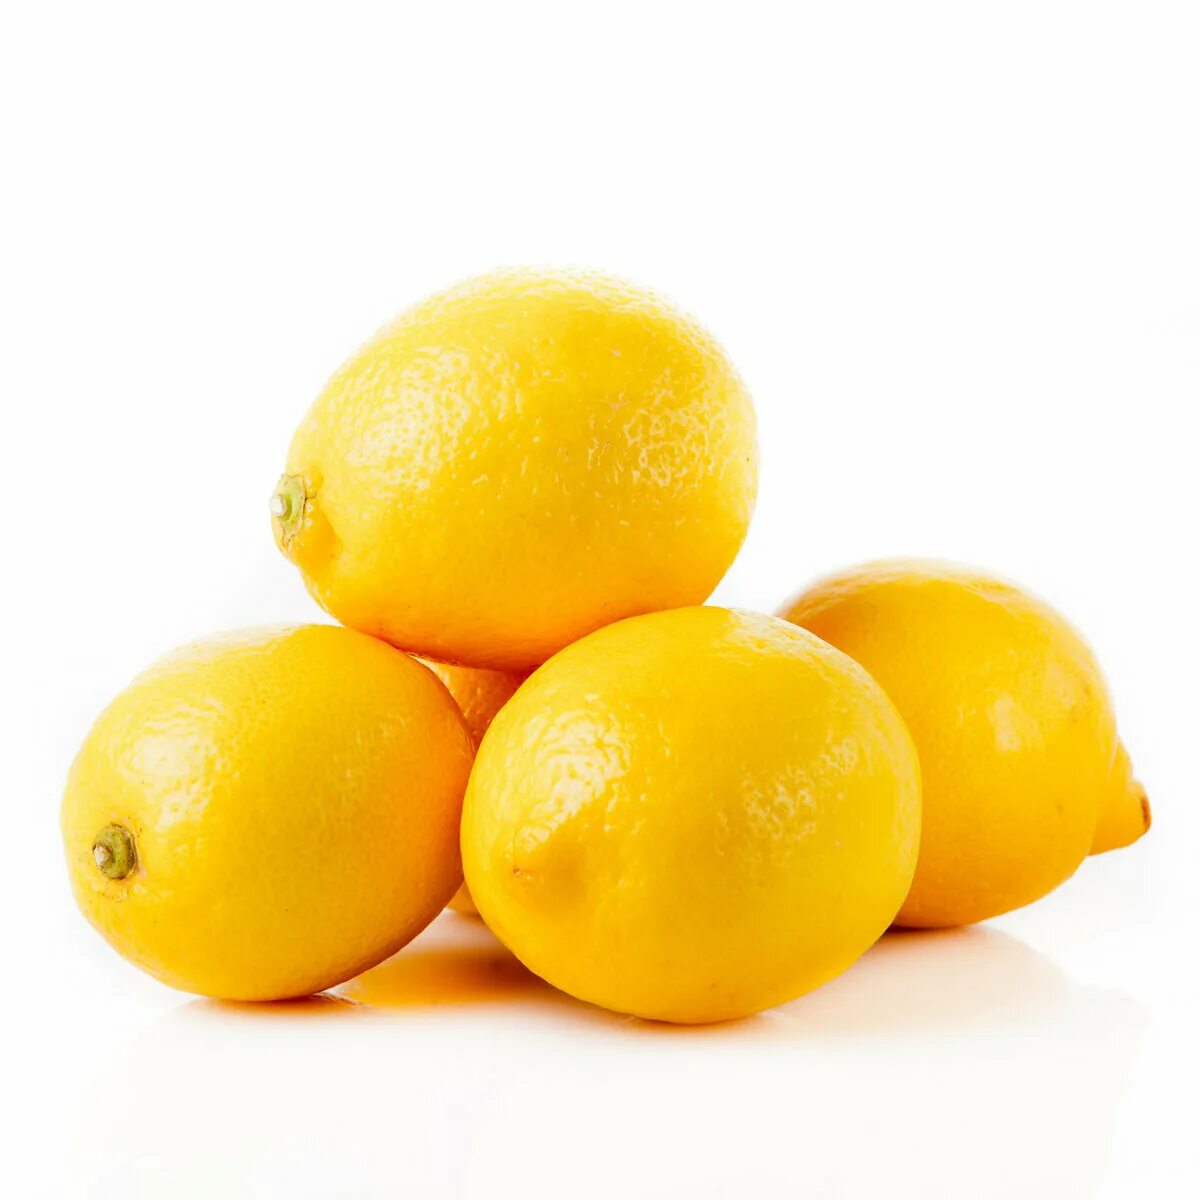 Купить лимон с доставкой. Лимон на белом фоне. Лимоны фасованные. Много Лимонов набелм фоне. Лимоны на белом фоне много.